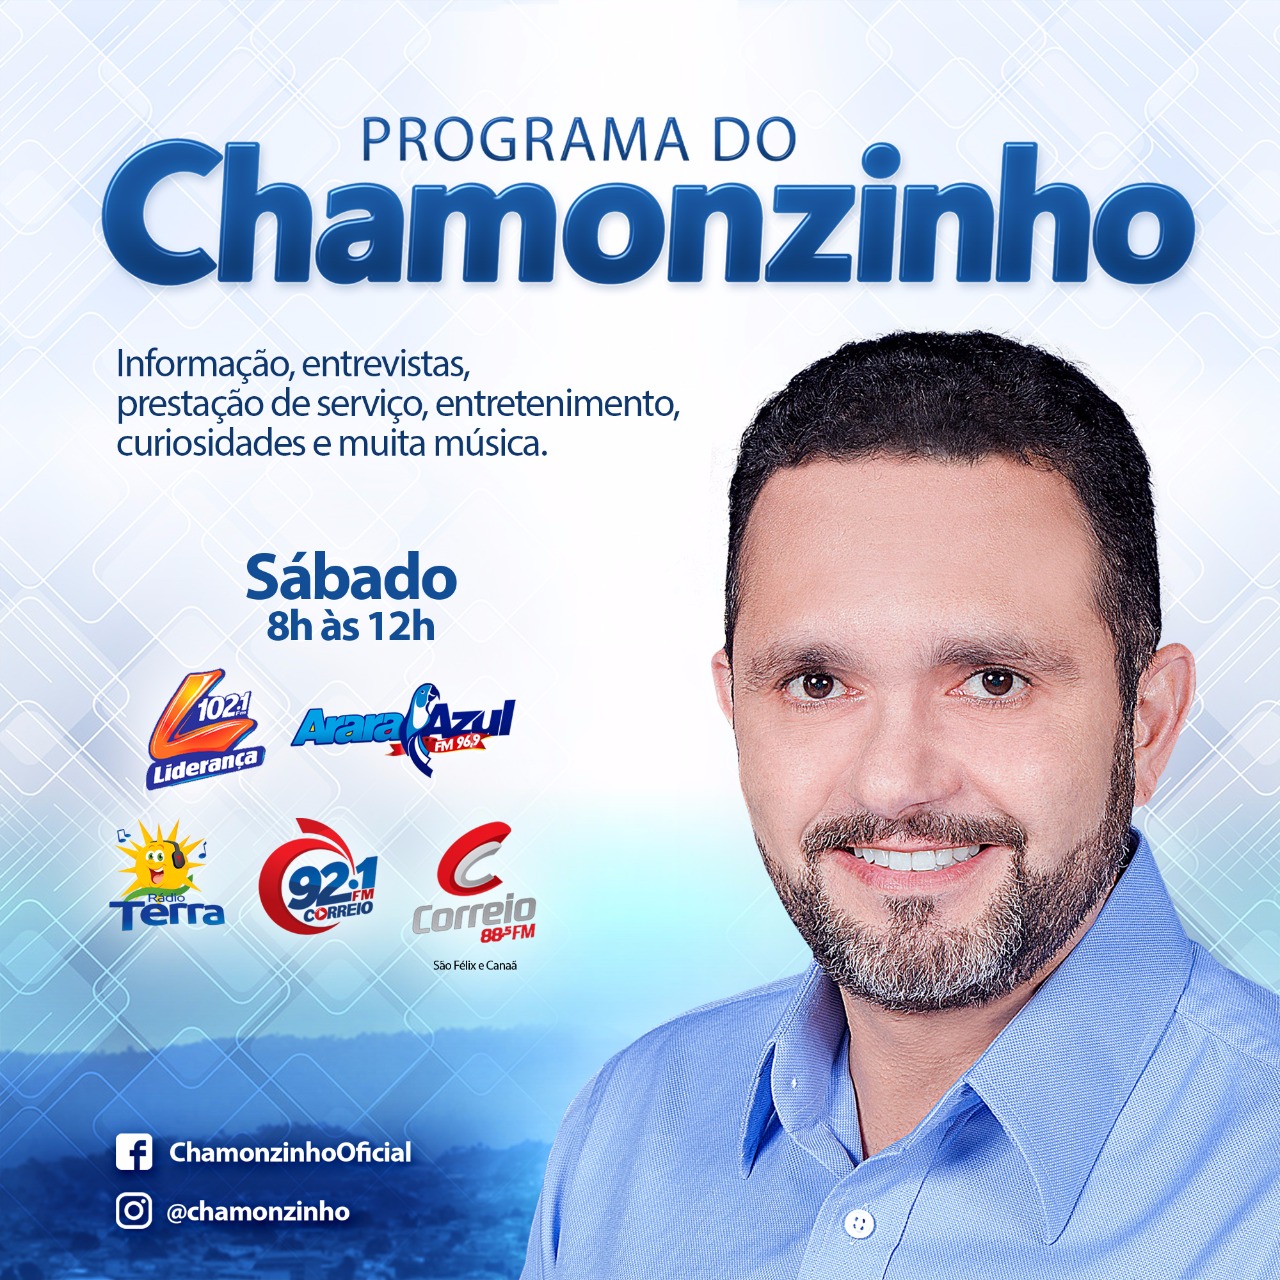  Programa do Chamonzinho estreia com o ‘pé direito’ nas melhores rádios da região